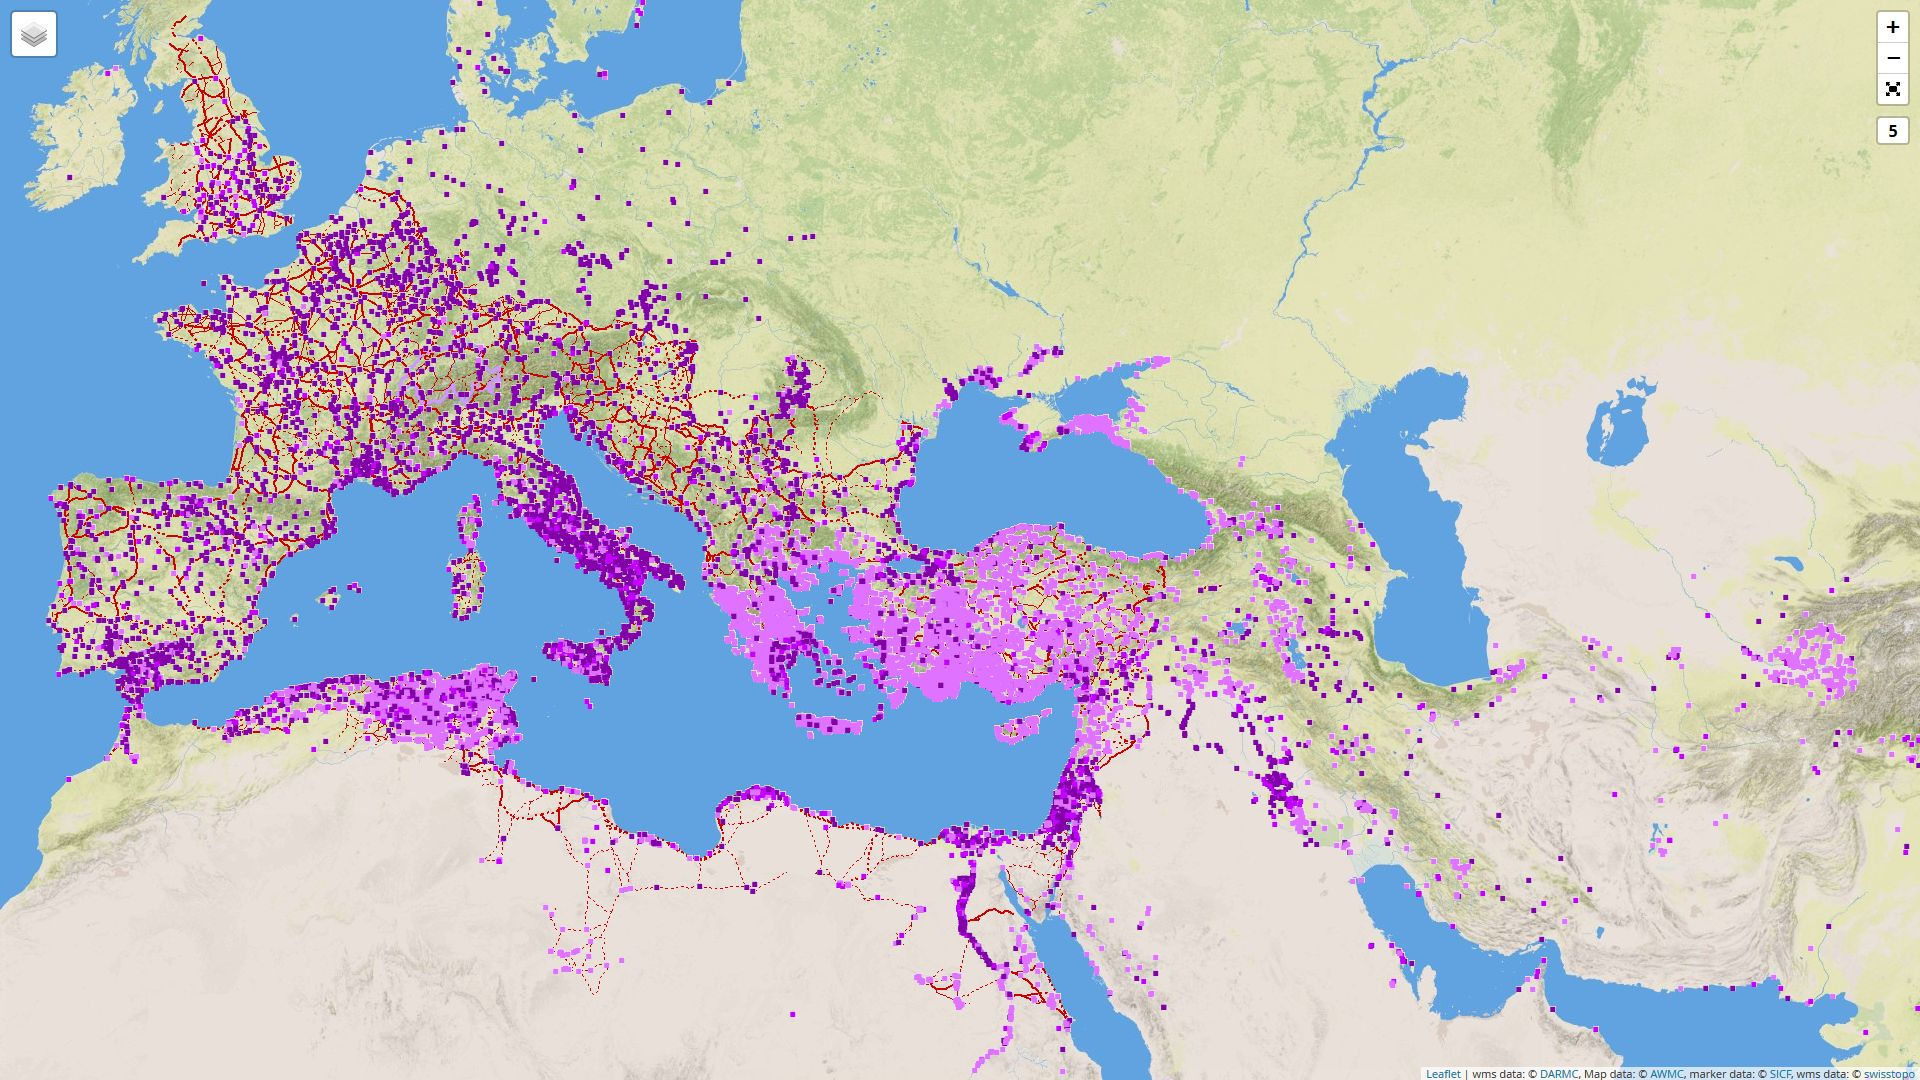 Digital Atlas of Roman and Medieval Civilizations: Karte mit römischen Strassen und Städten